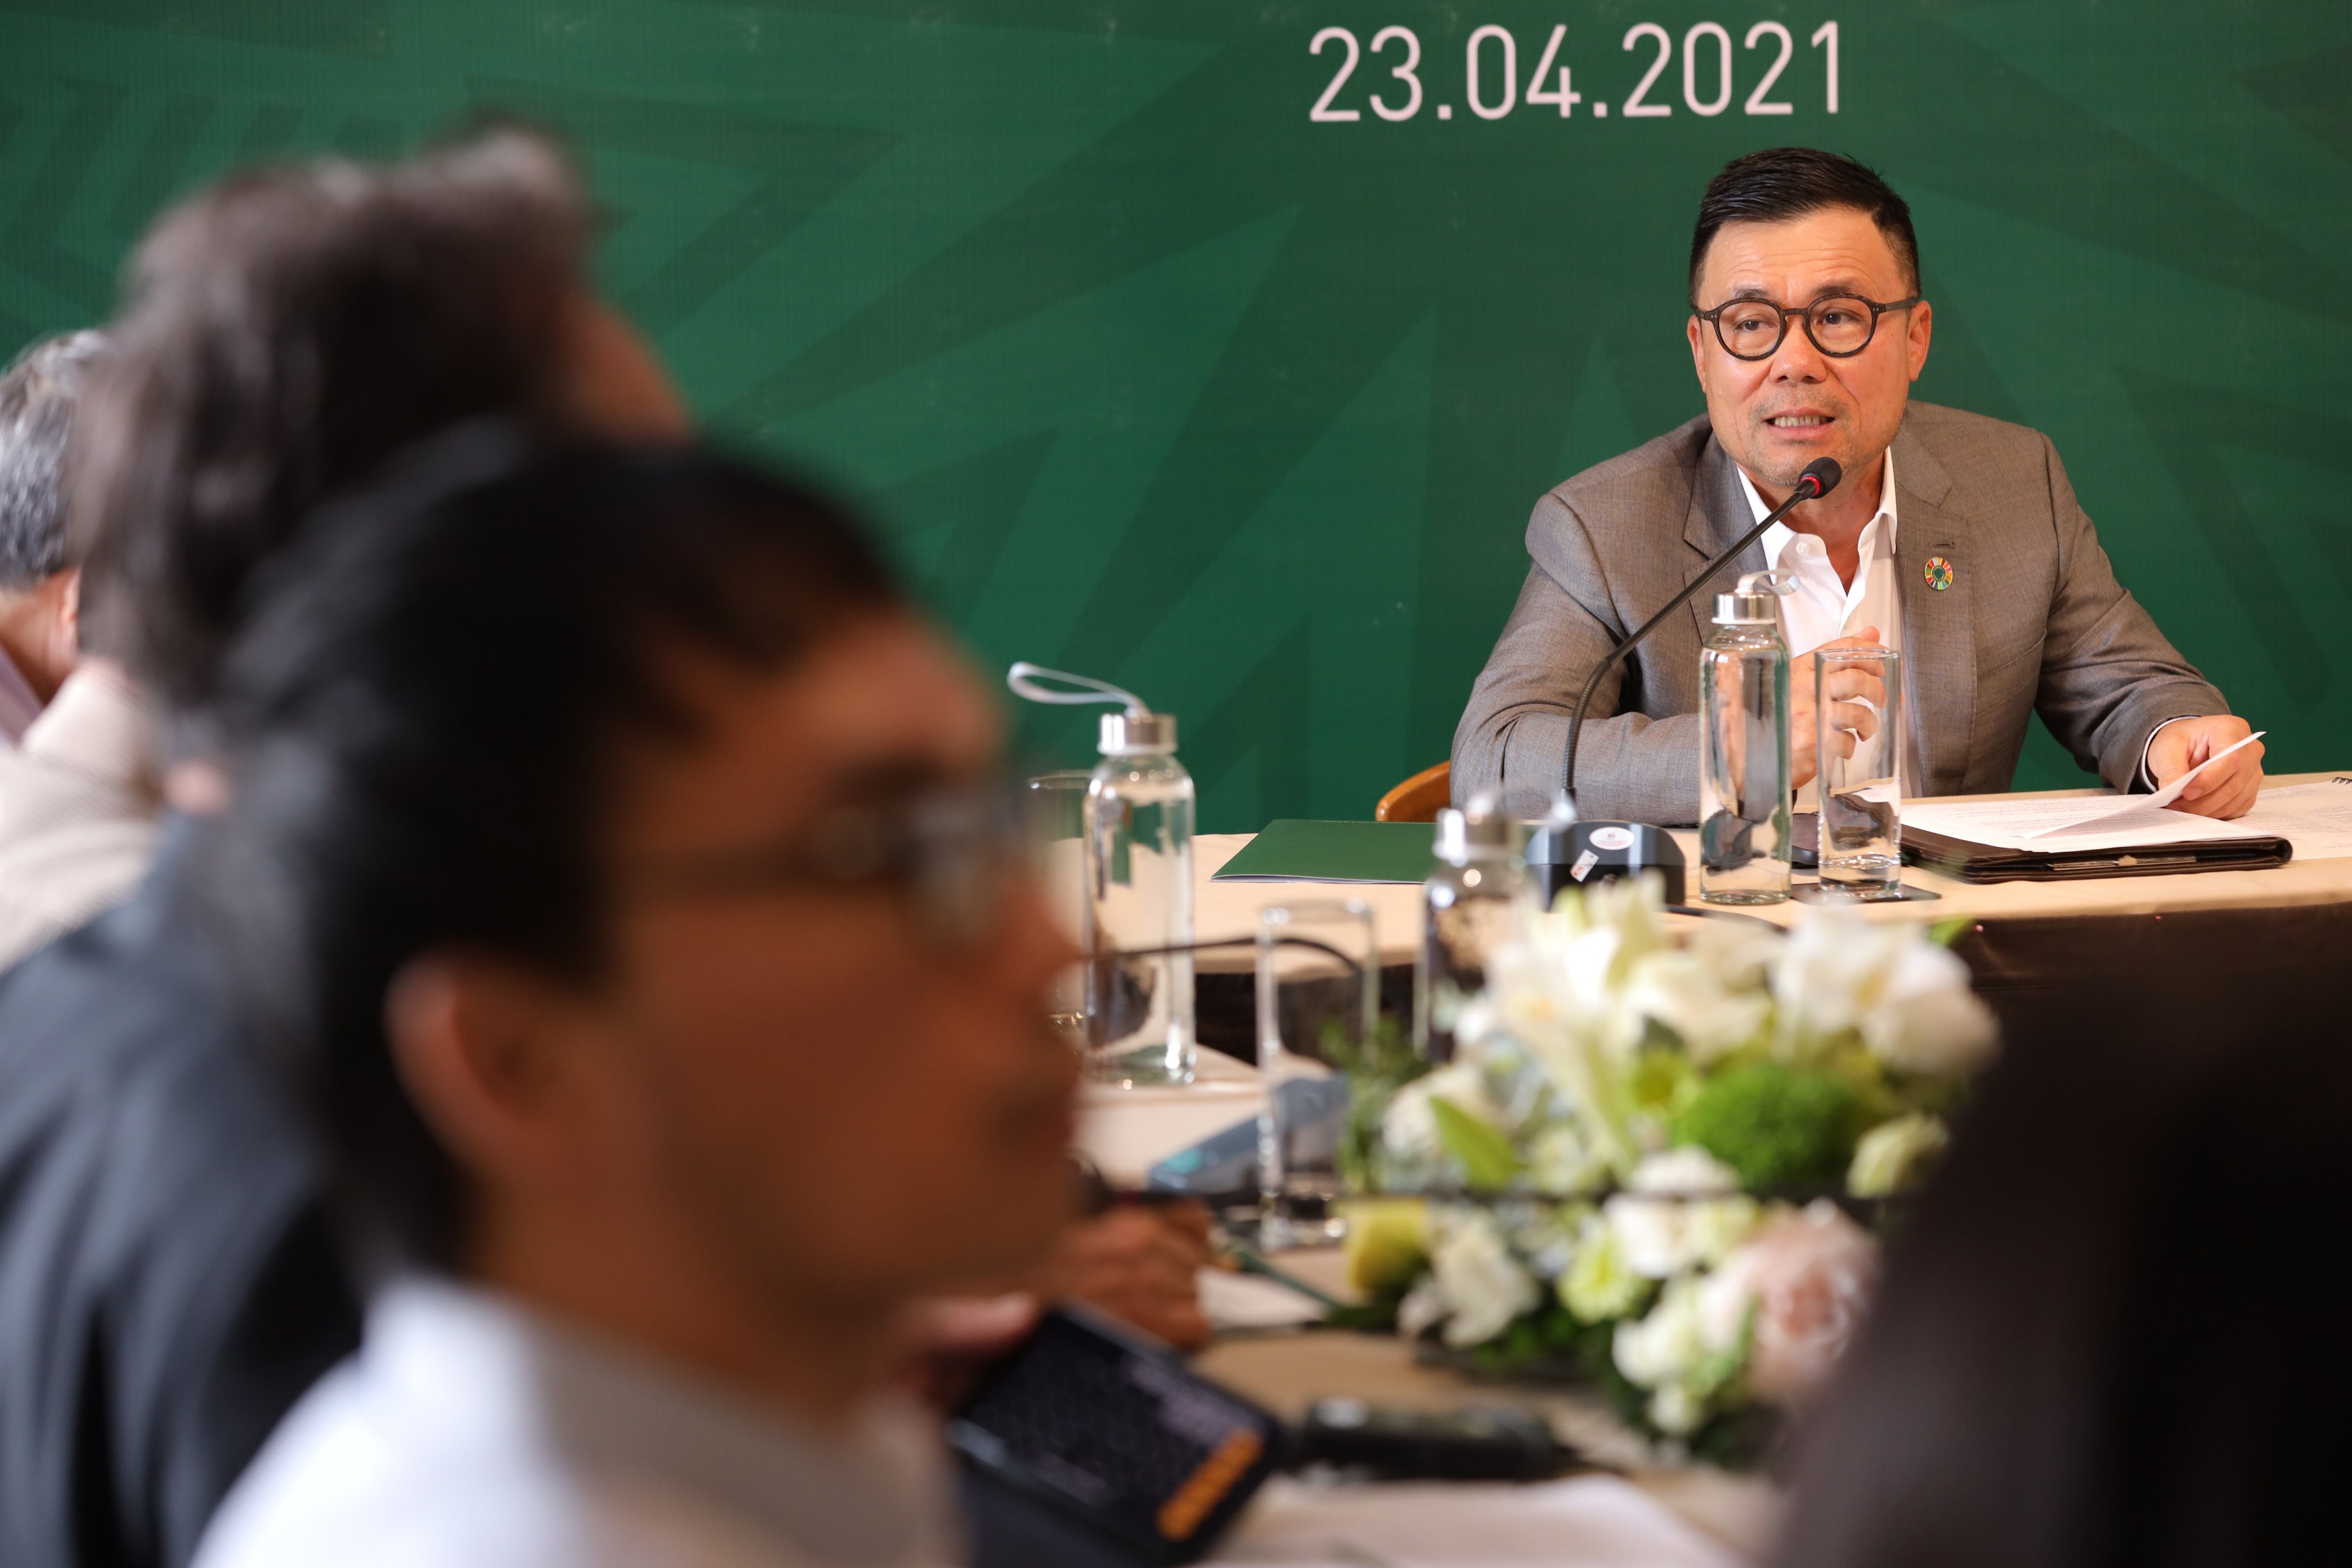 Chủ tịch Nguyễn Duy Hưng: PAN đang tăng trưởng theo đúng lộ trình